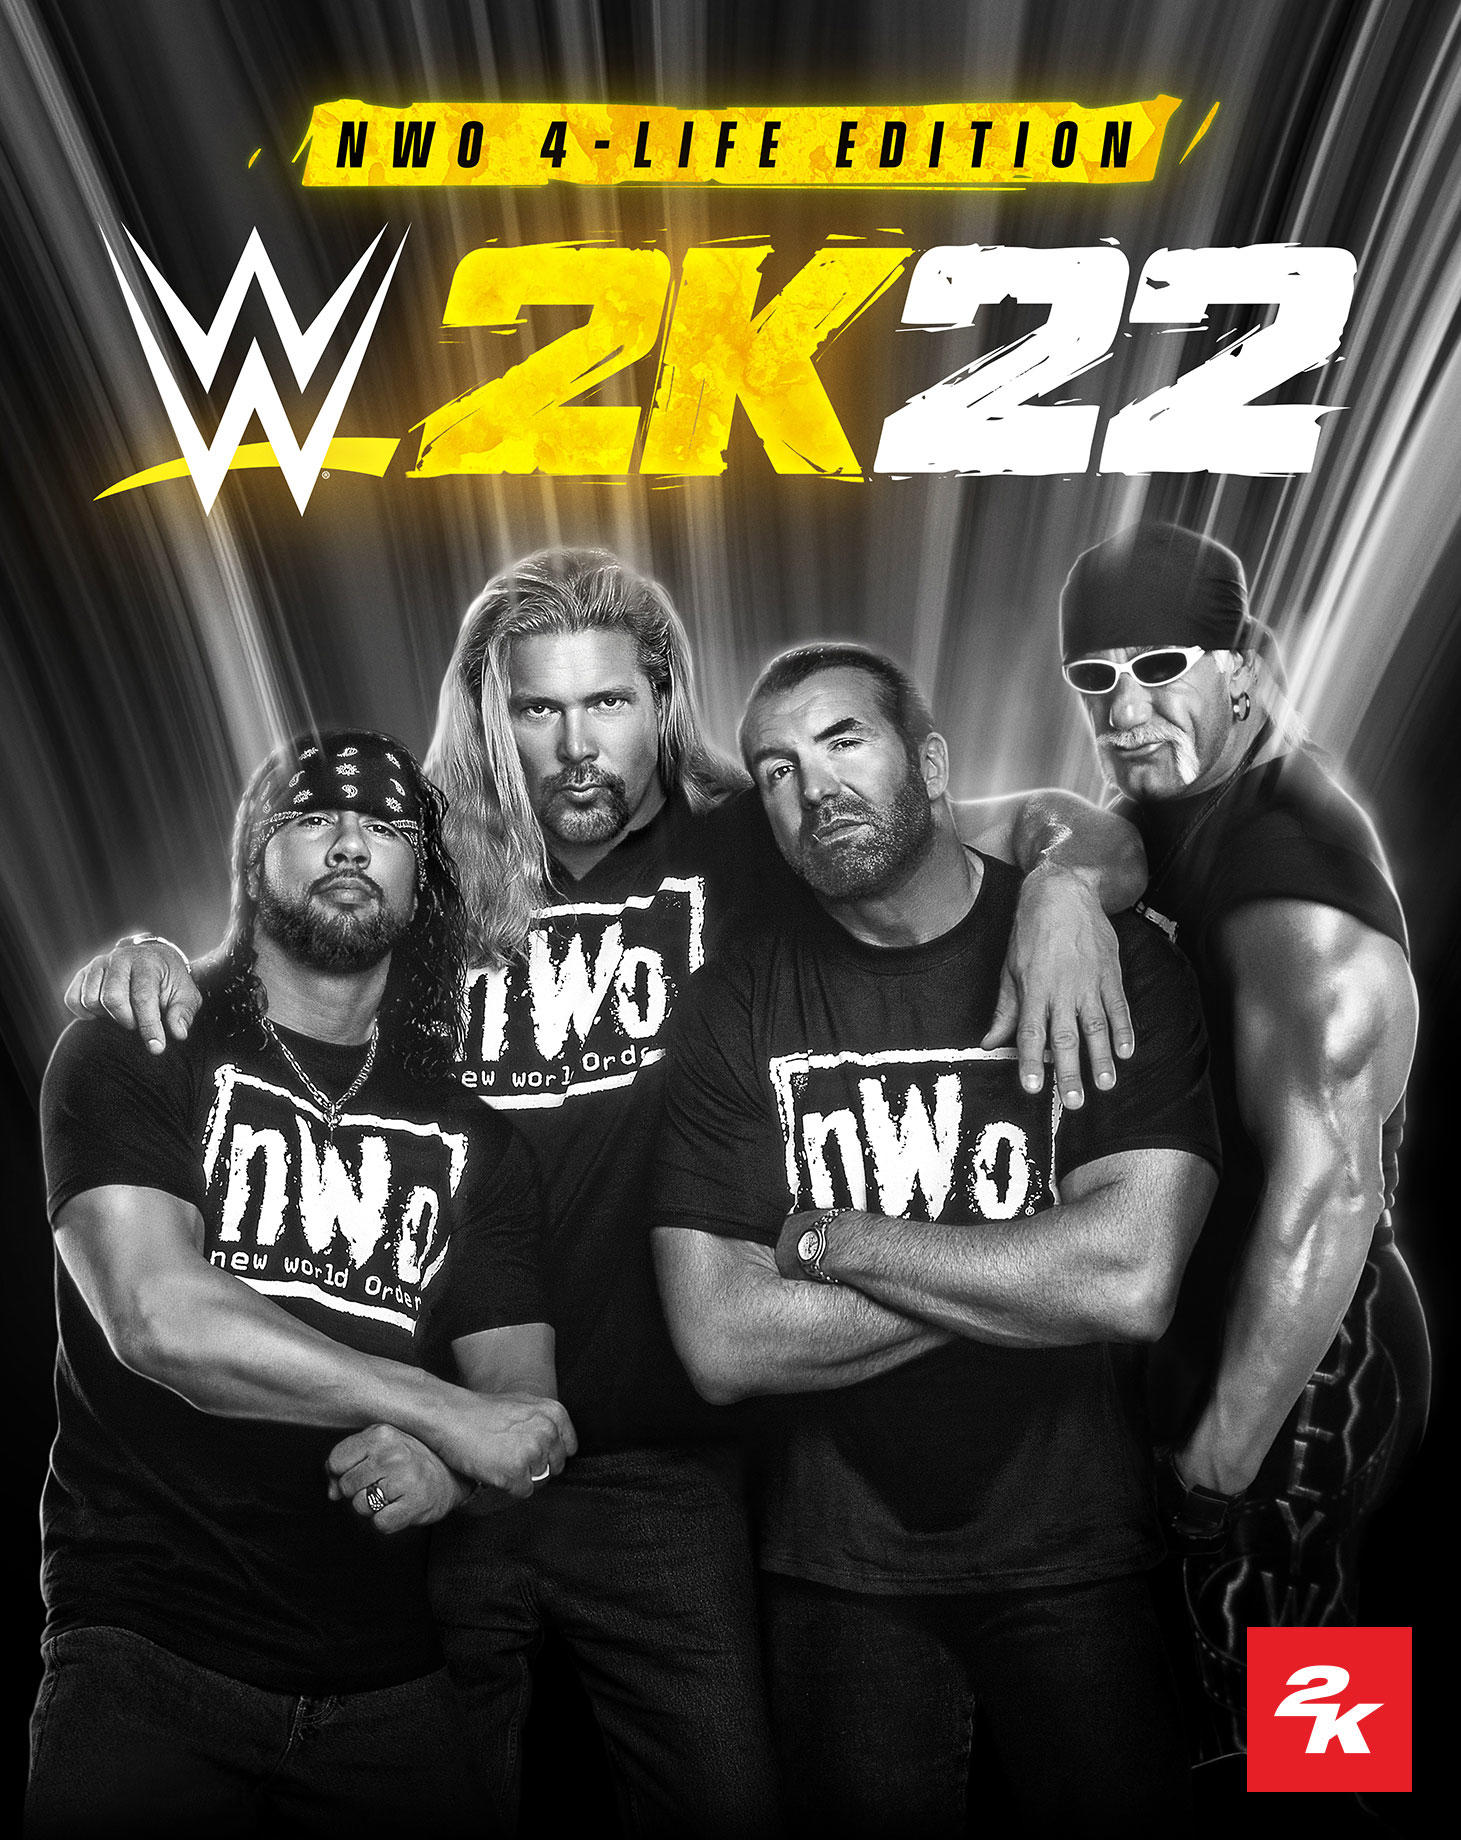 WWE 2K22 Official Wrestler Ratings